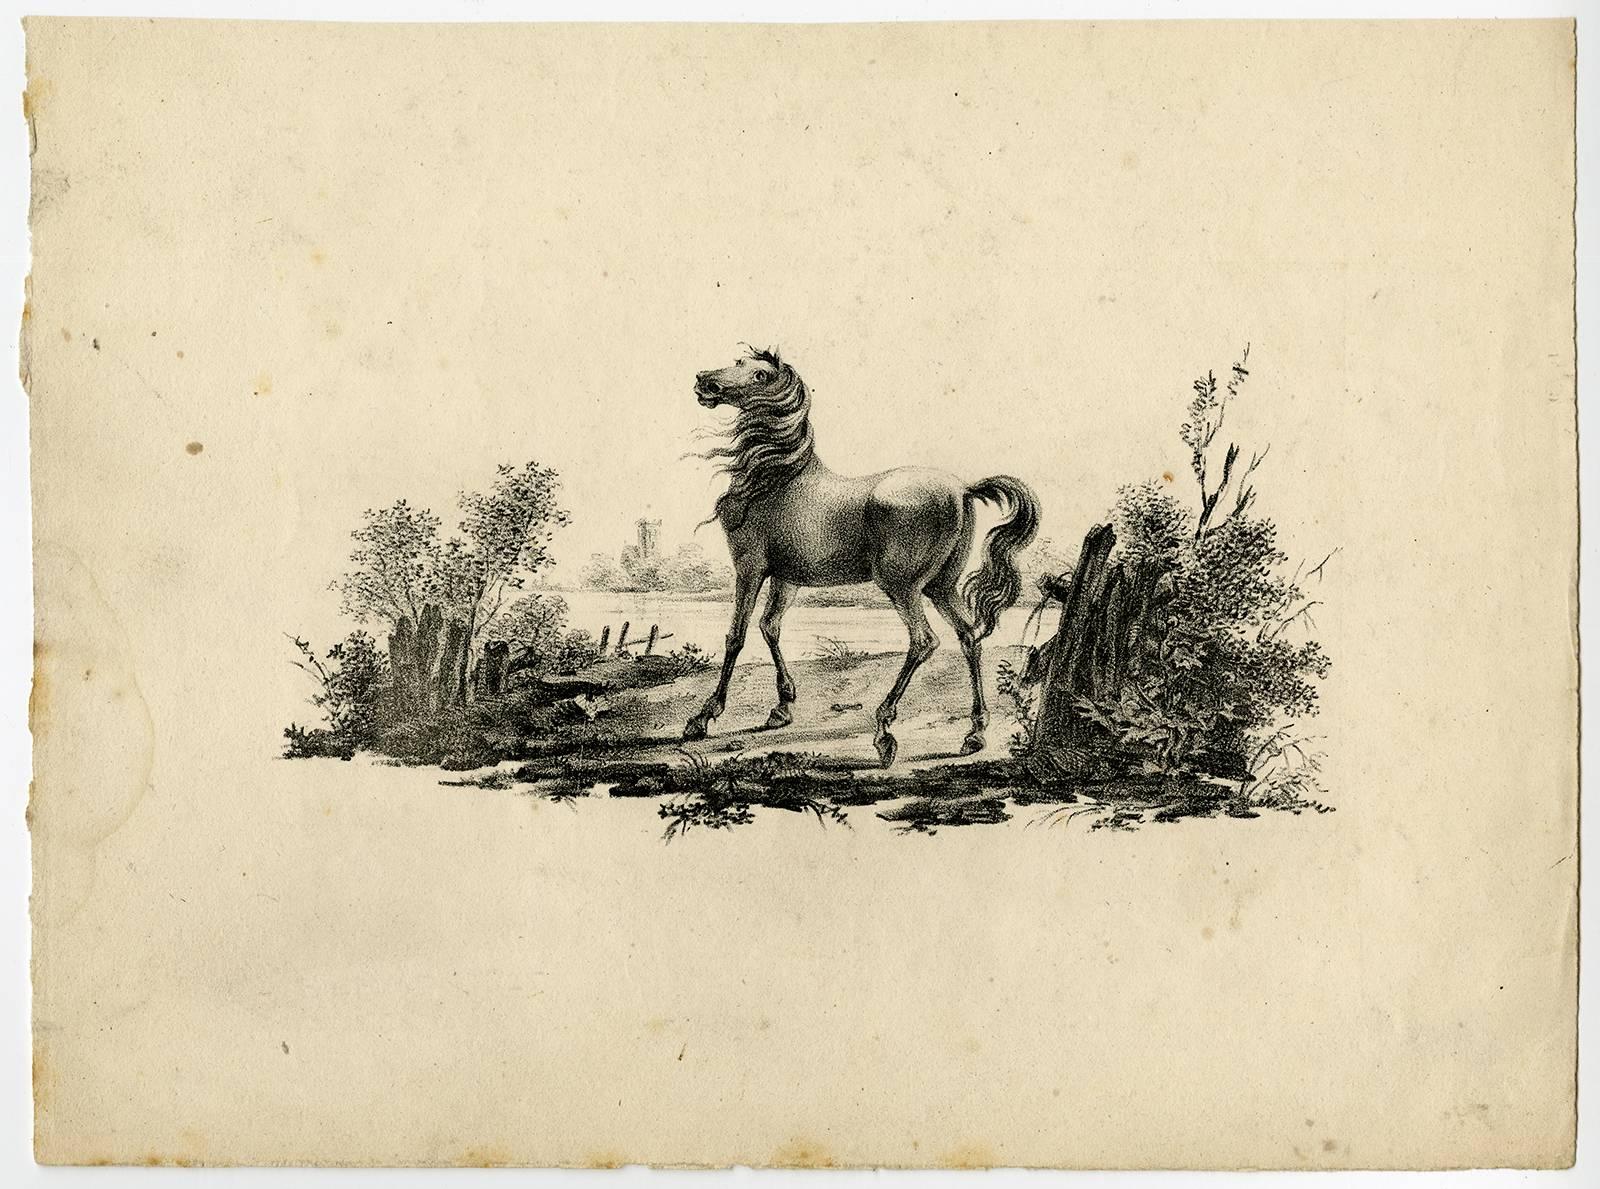 Etude de Cheveaux inventee & lithographie par Vinkeles et Bemme, Rotterdam 1825. - Beige Animal Print by Johannes Adriaansz Bemme